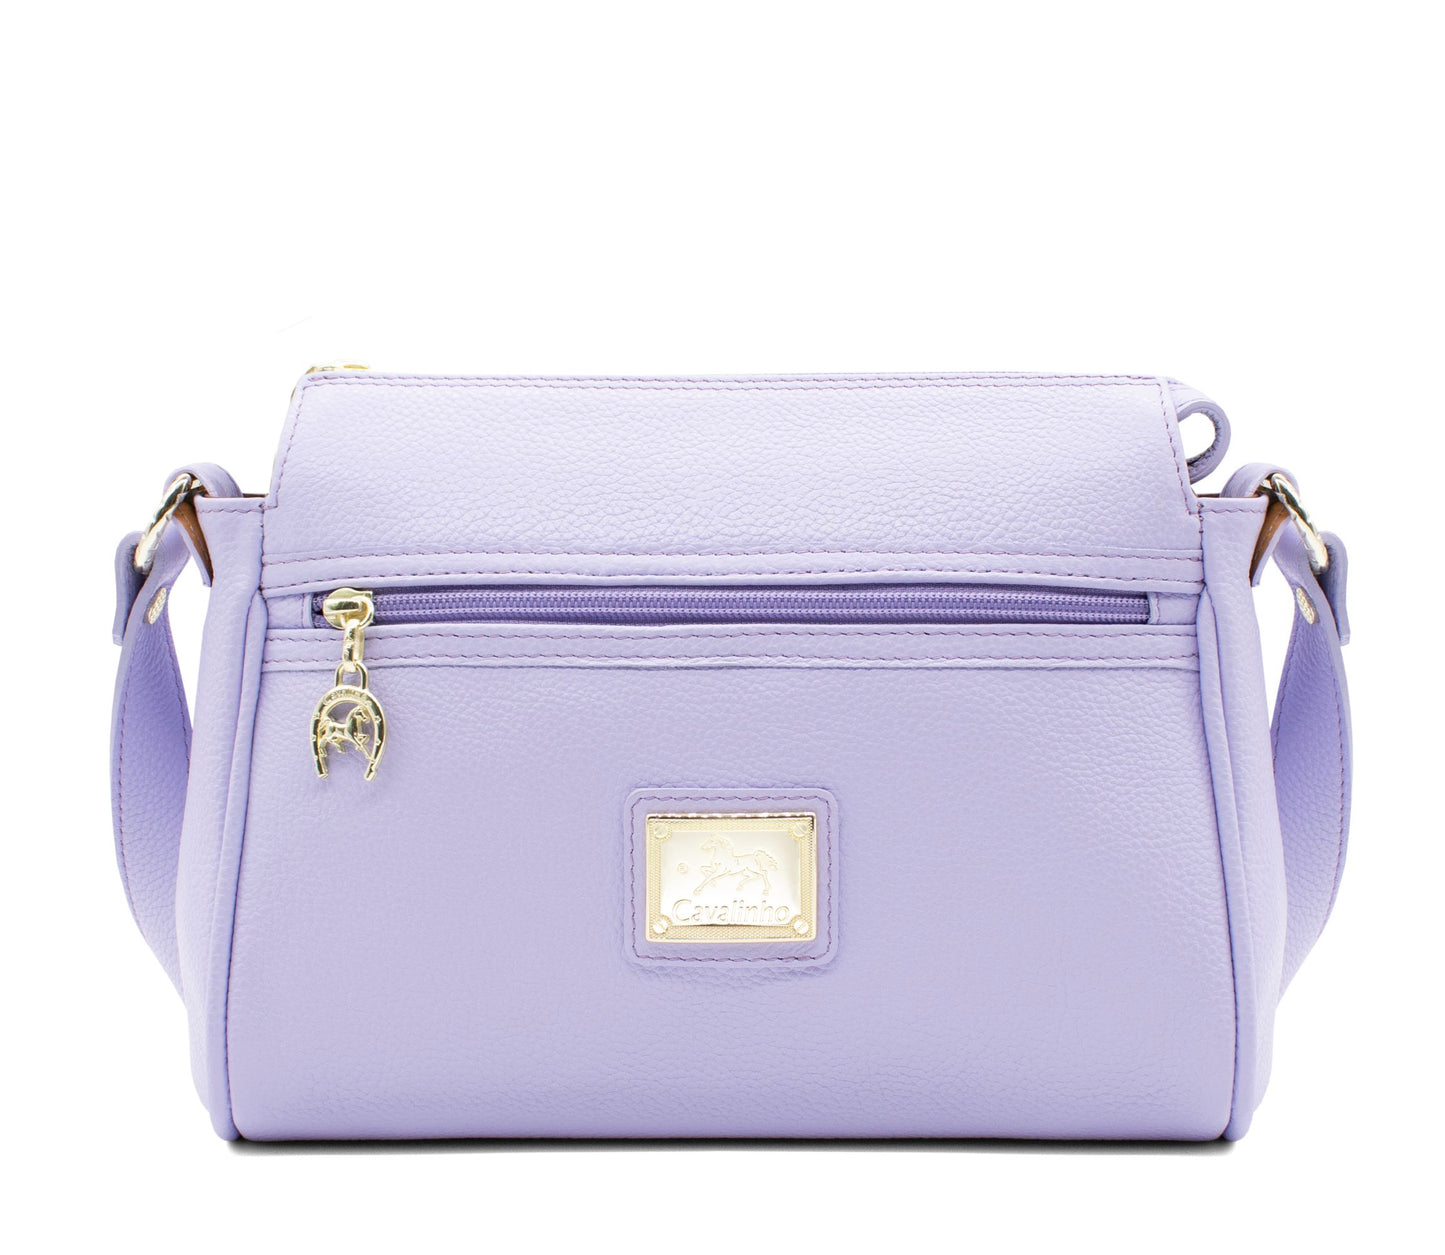 #color_ Lilac | Cavalinho Muse Leather Crossbody Bag - Lilac - 18300373.39_1